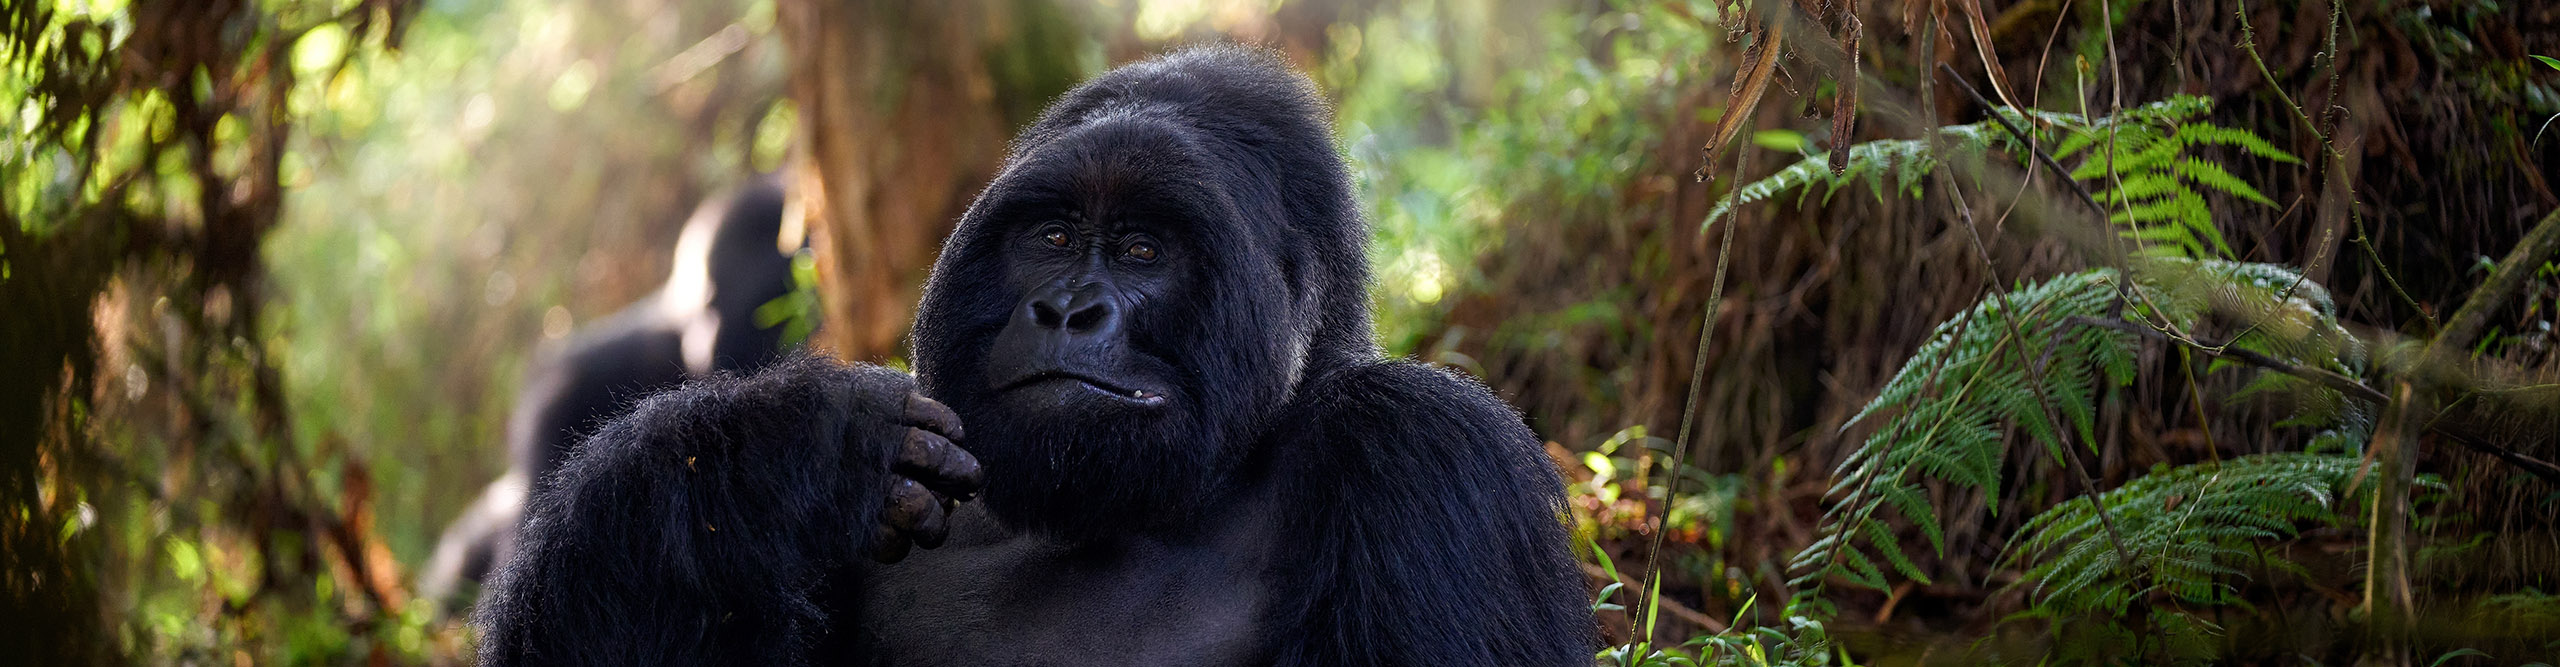 Male gorilla eating in the jungle in Uganda